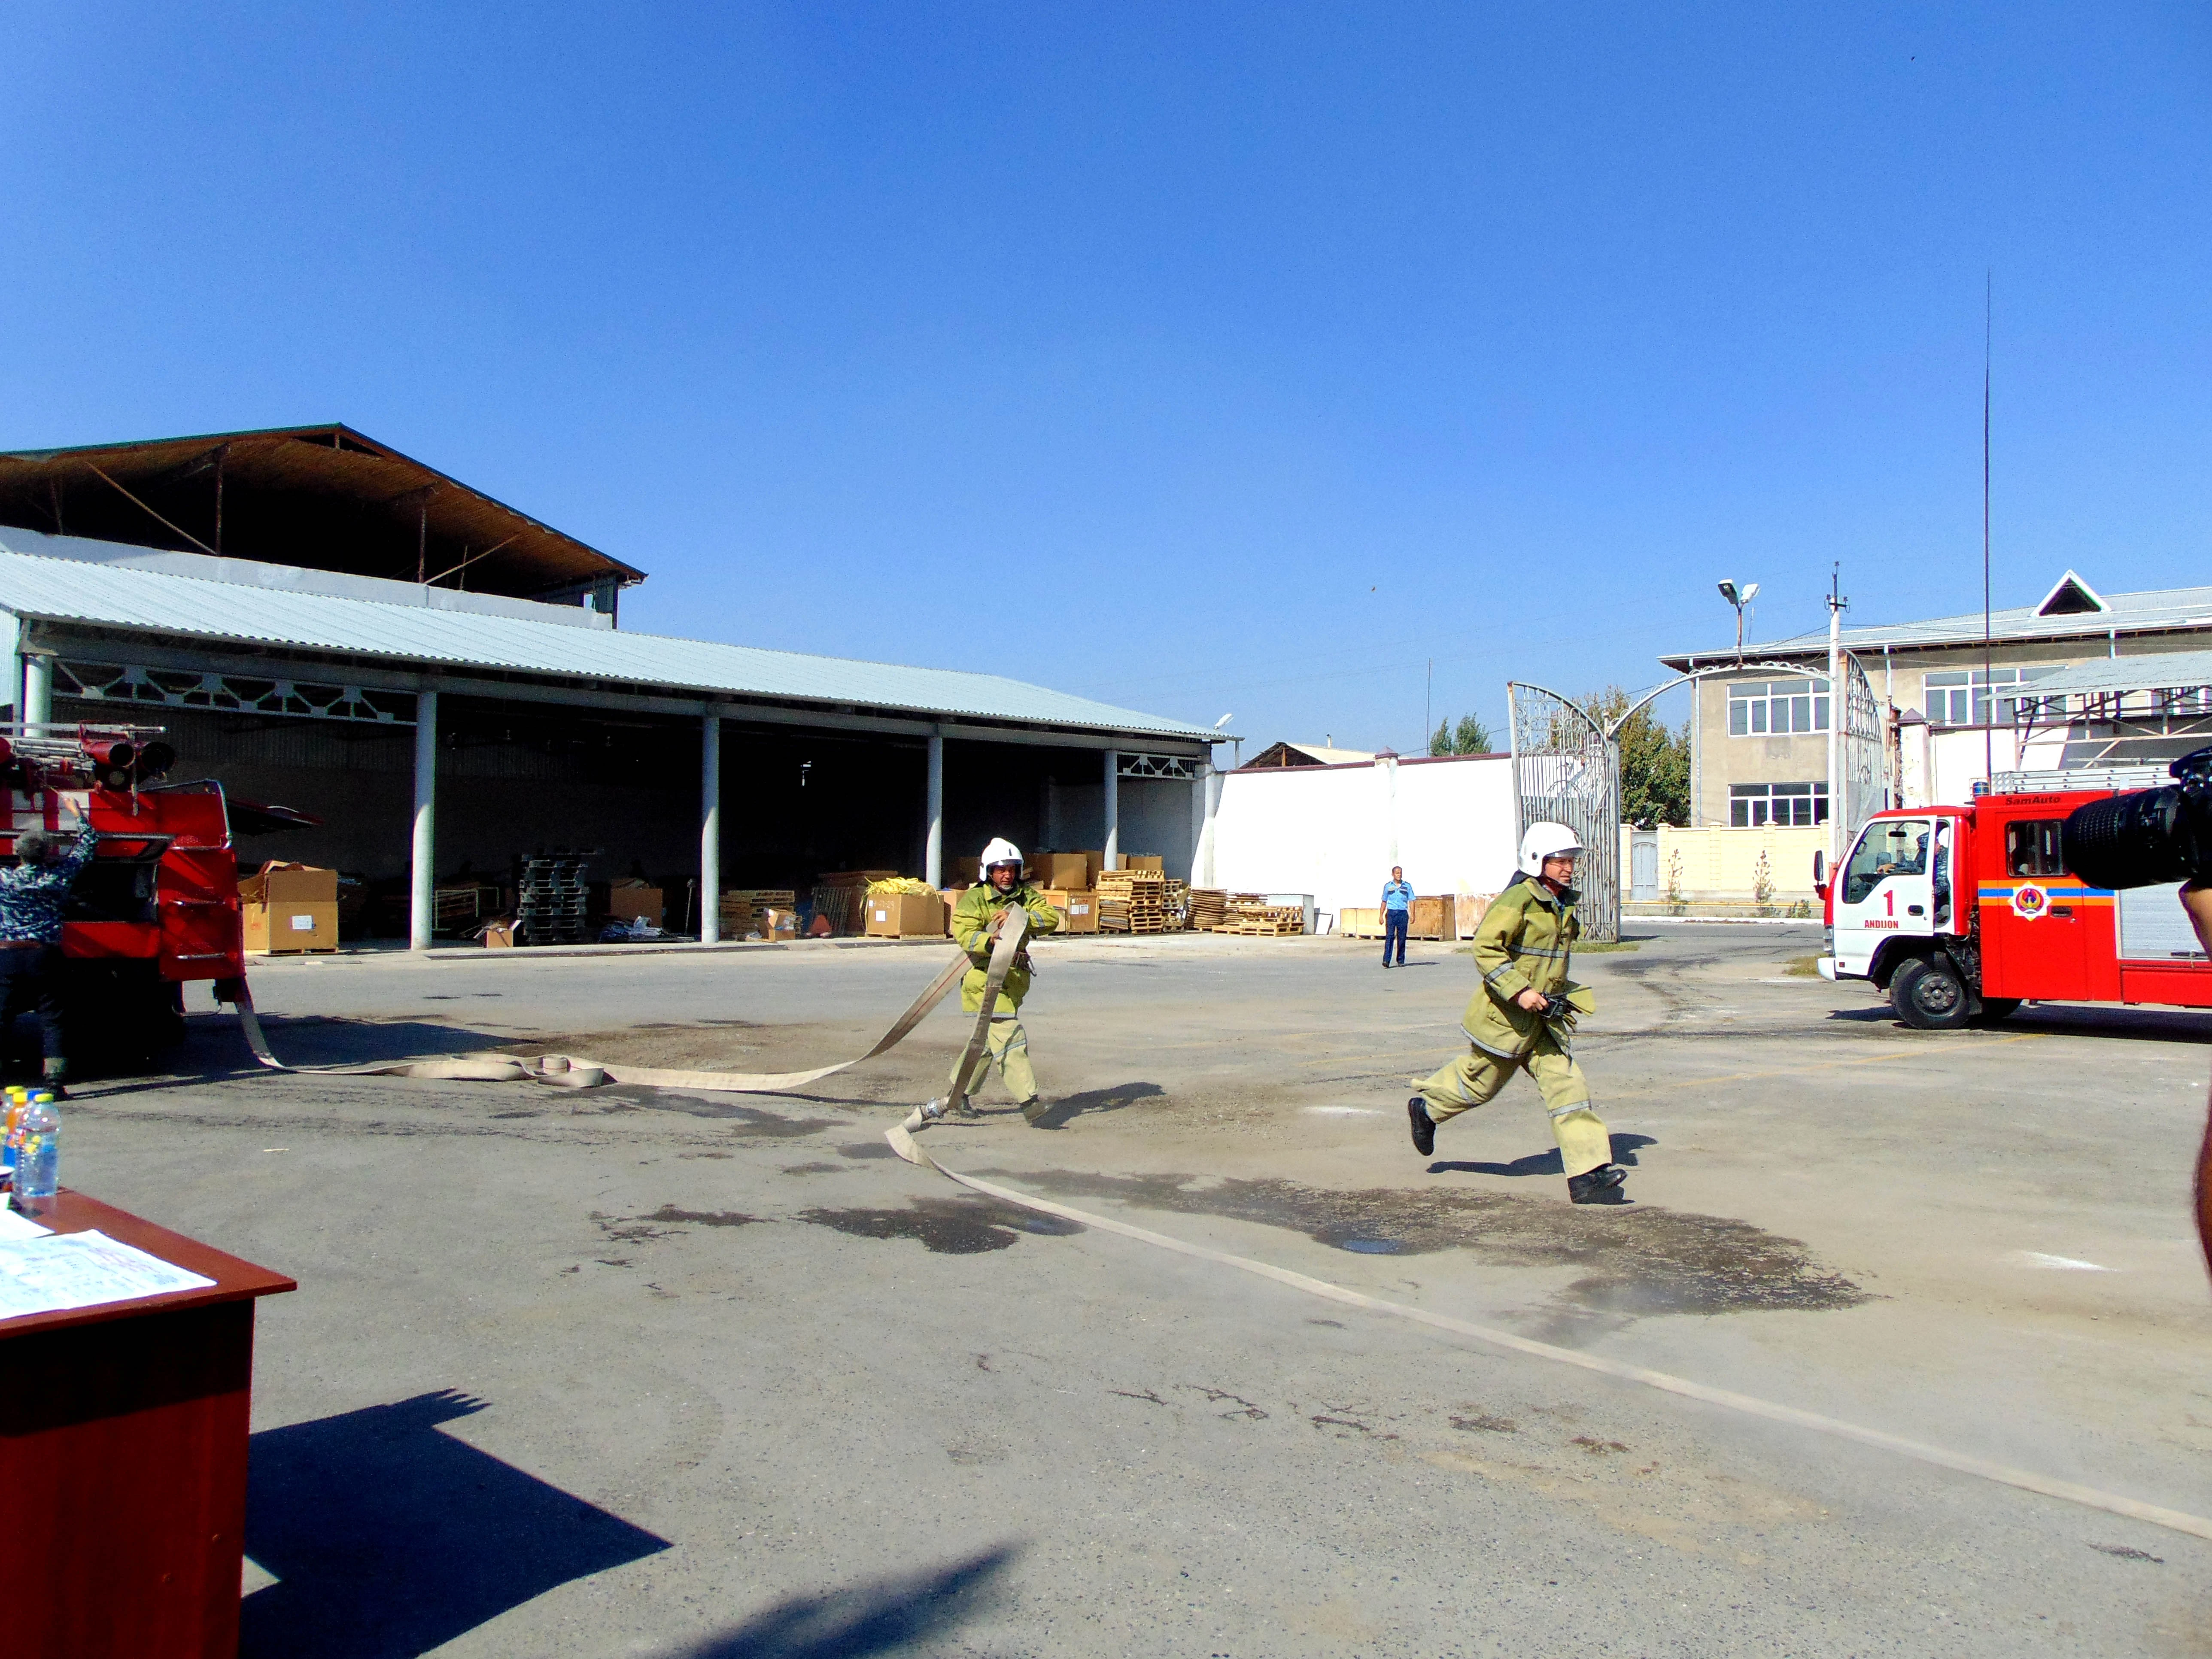 Прошли плановые учения по противопожарной безопасности на заводе "O`ZERA CLIMATE CONTROL". В ней приняли участие пожарные части и сотрудники предприятия.